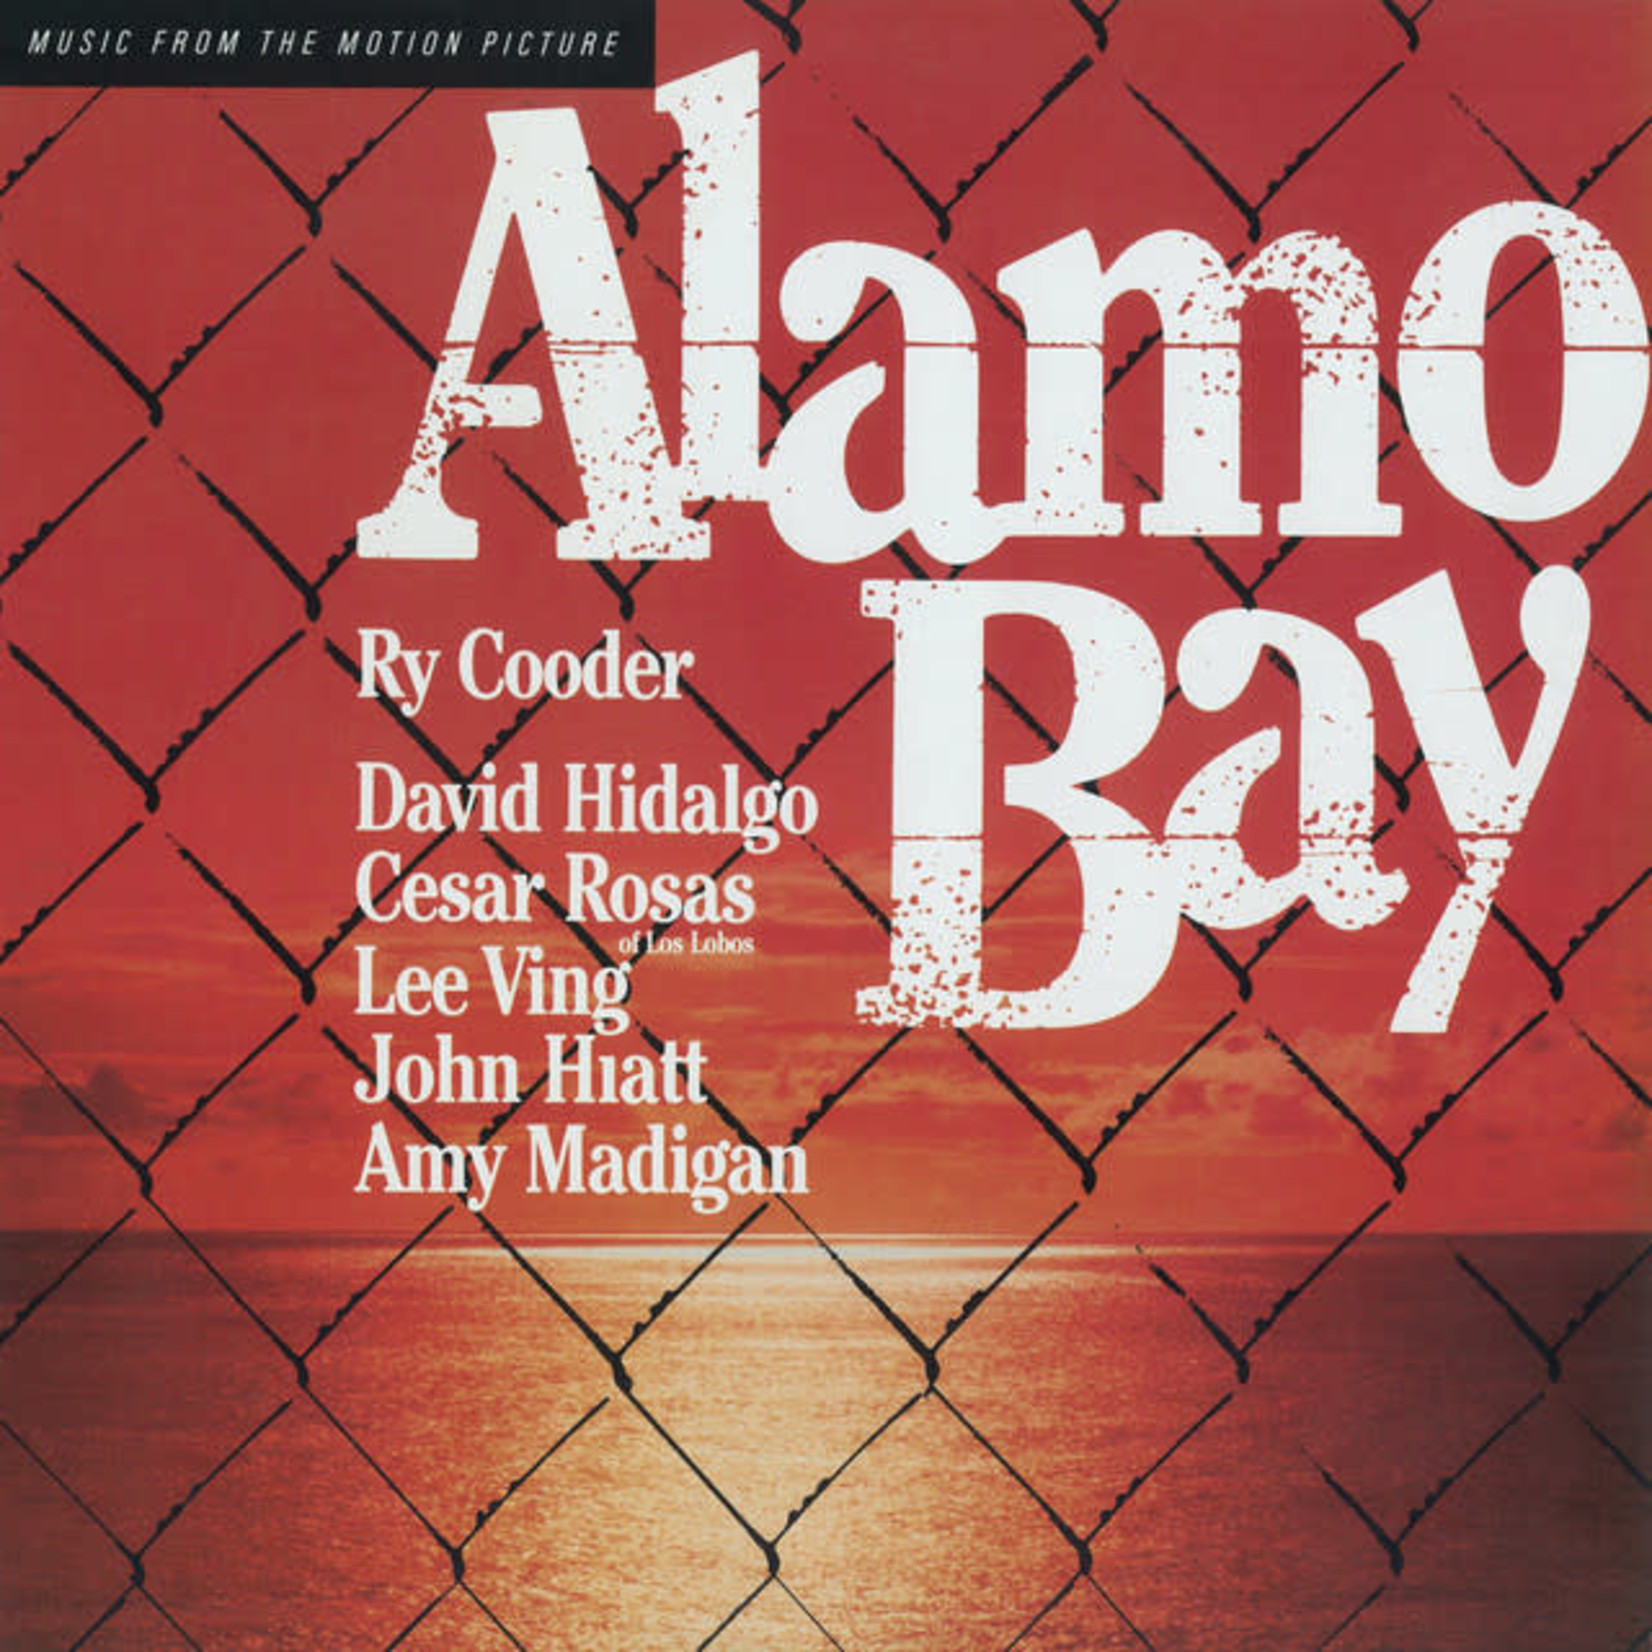 [Vintage] Ry Cooder - Alamo Bay (soundtrack)